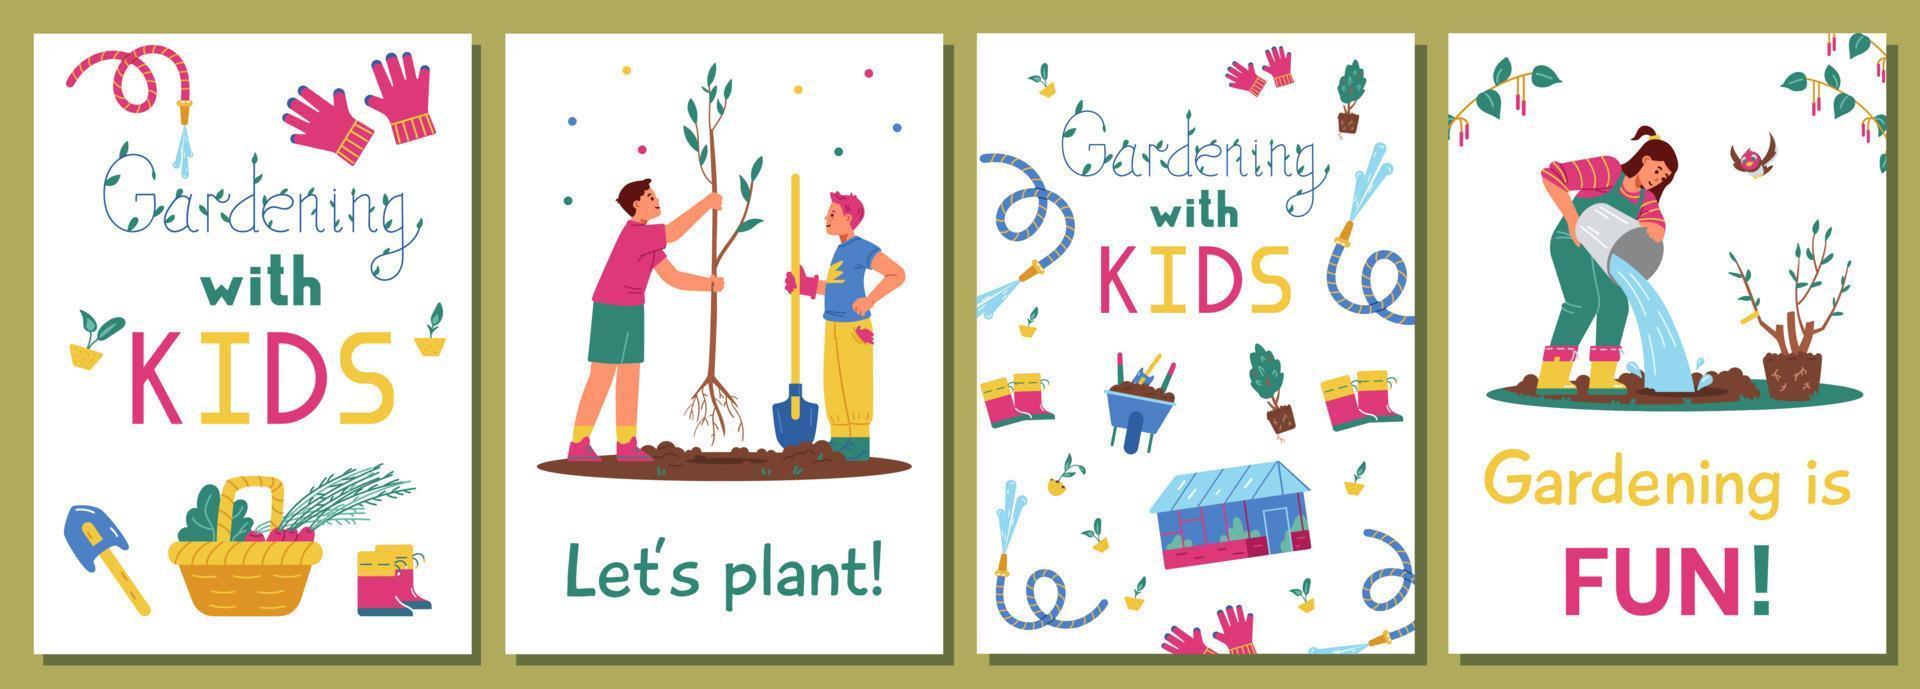 trädgårdsarbete med barn uppsättning vektorkort. illustrationer av barn som planterar träd, vattnar, trädgårdsutrustning. vektor